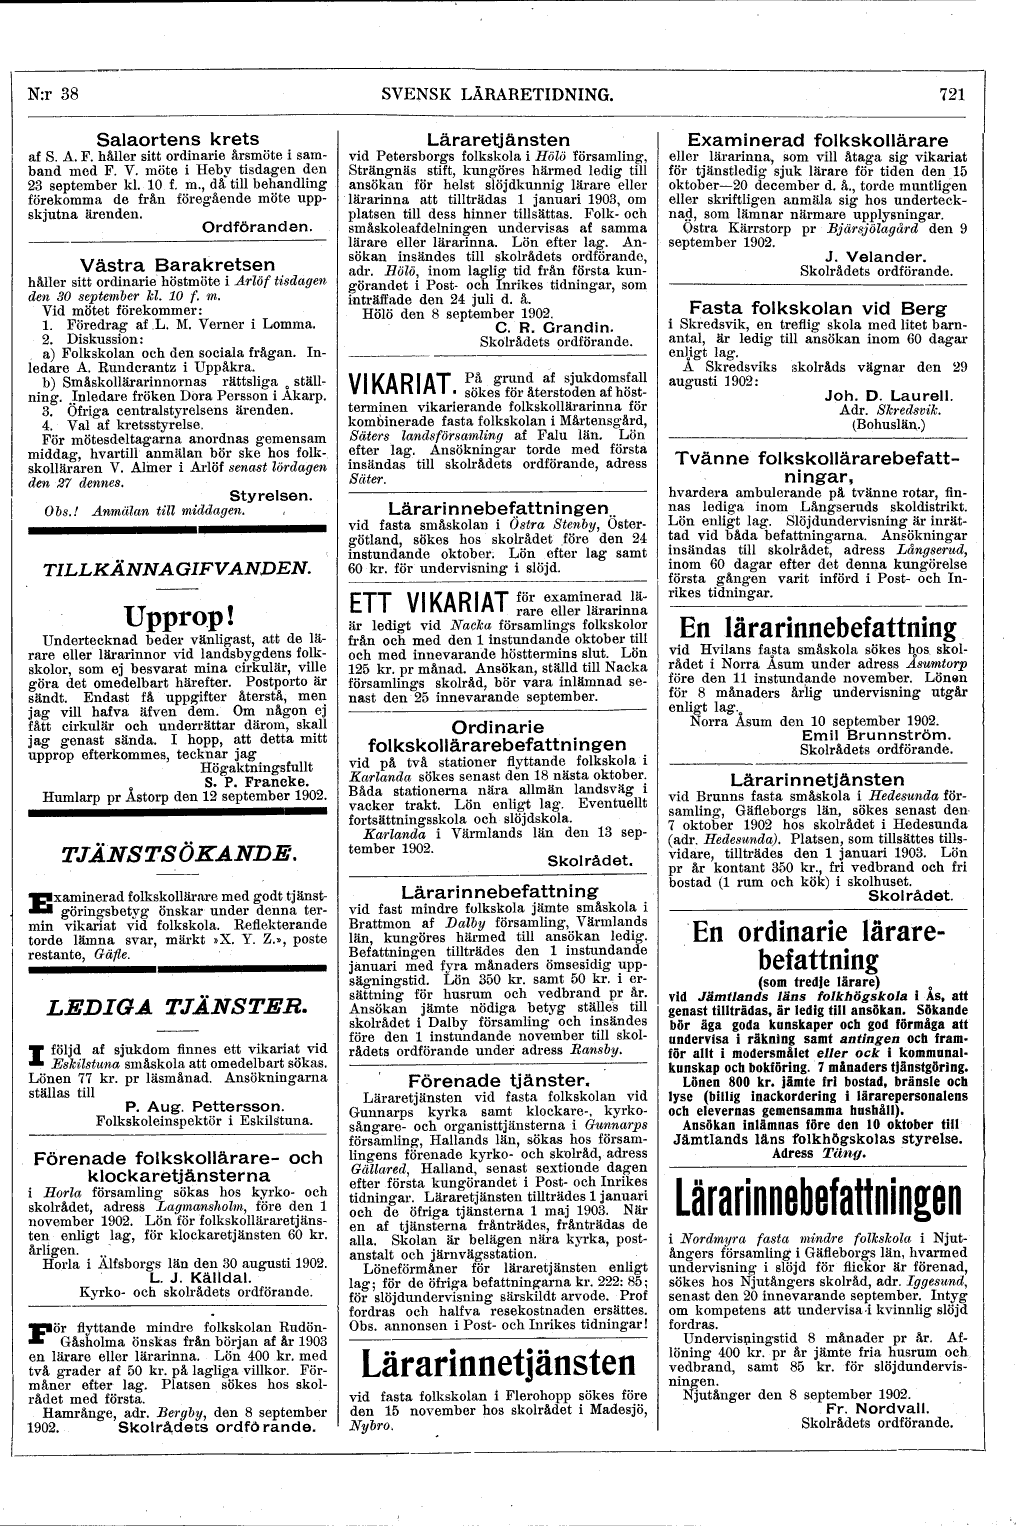 721 (Svensk Läraretidning / 21:a årg. 1902)